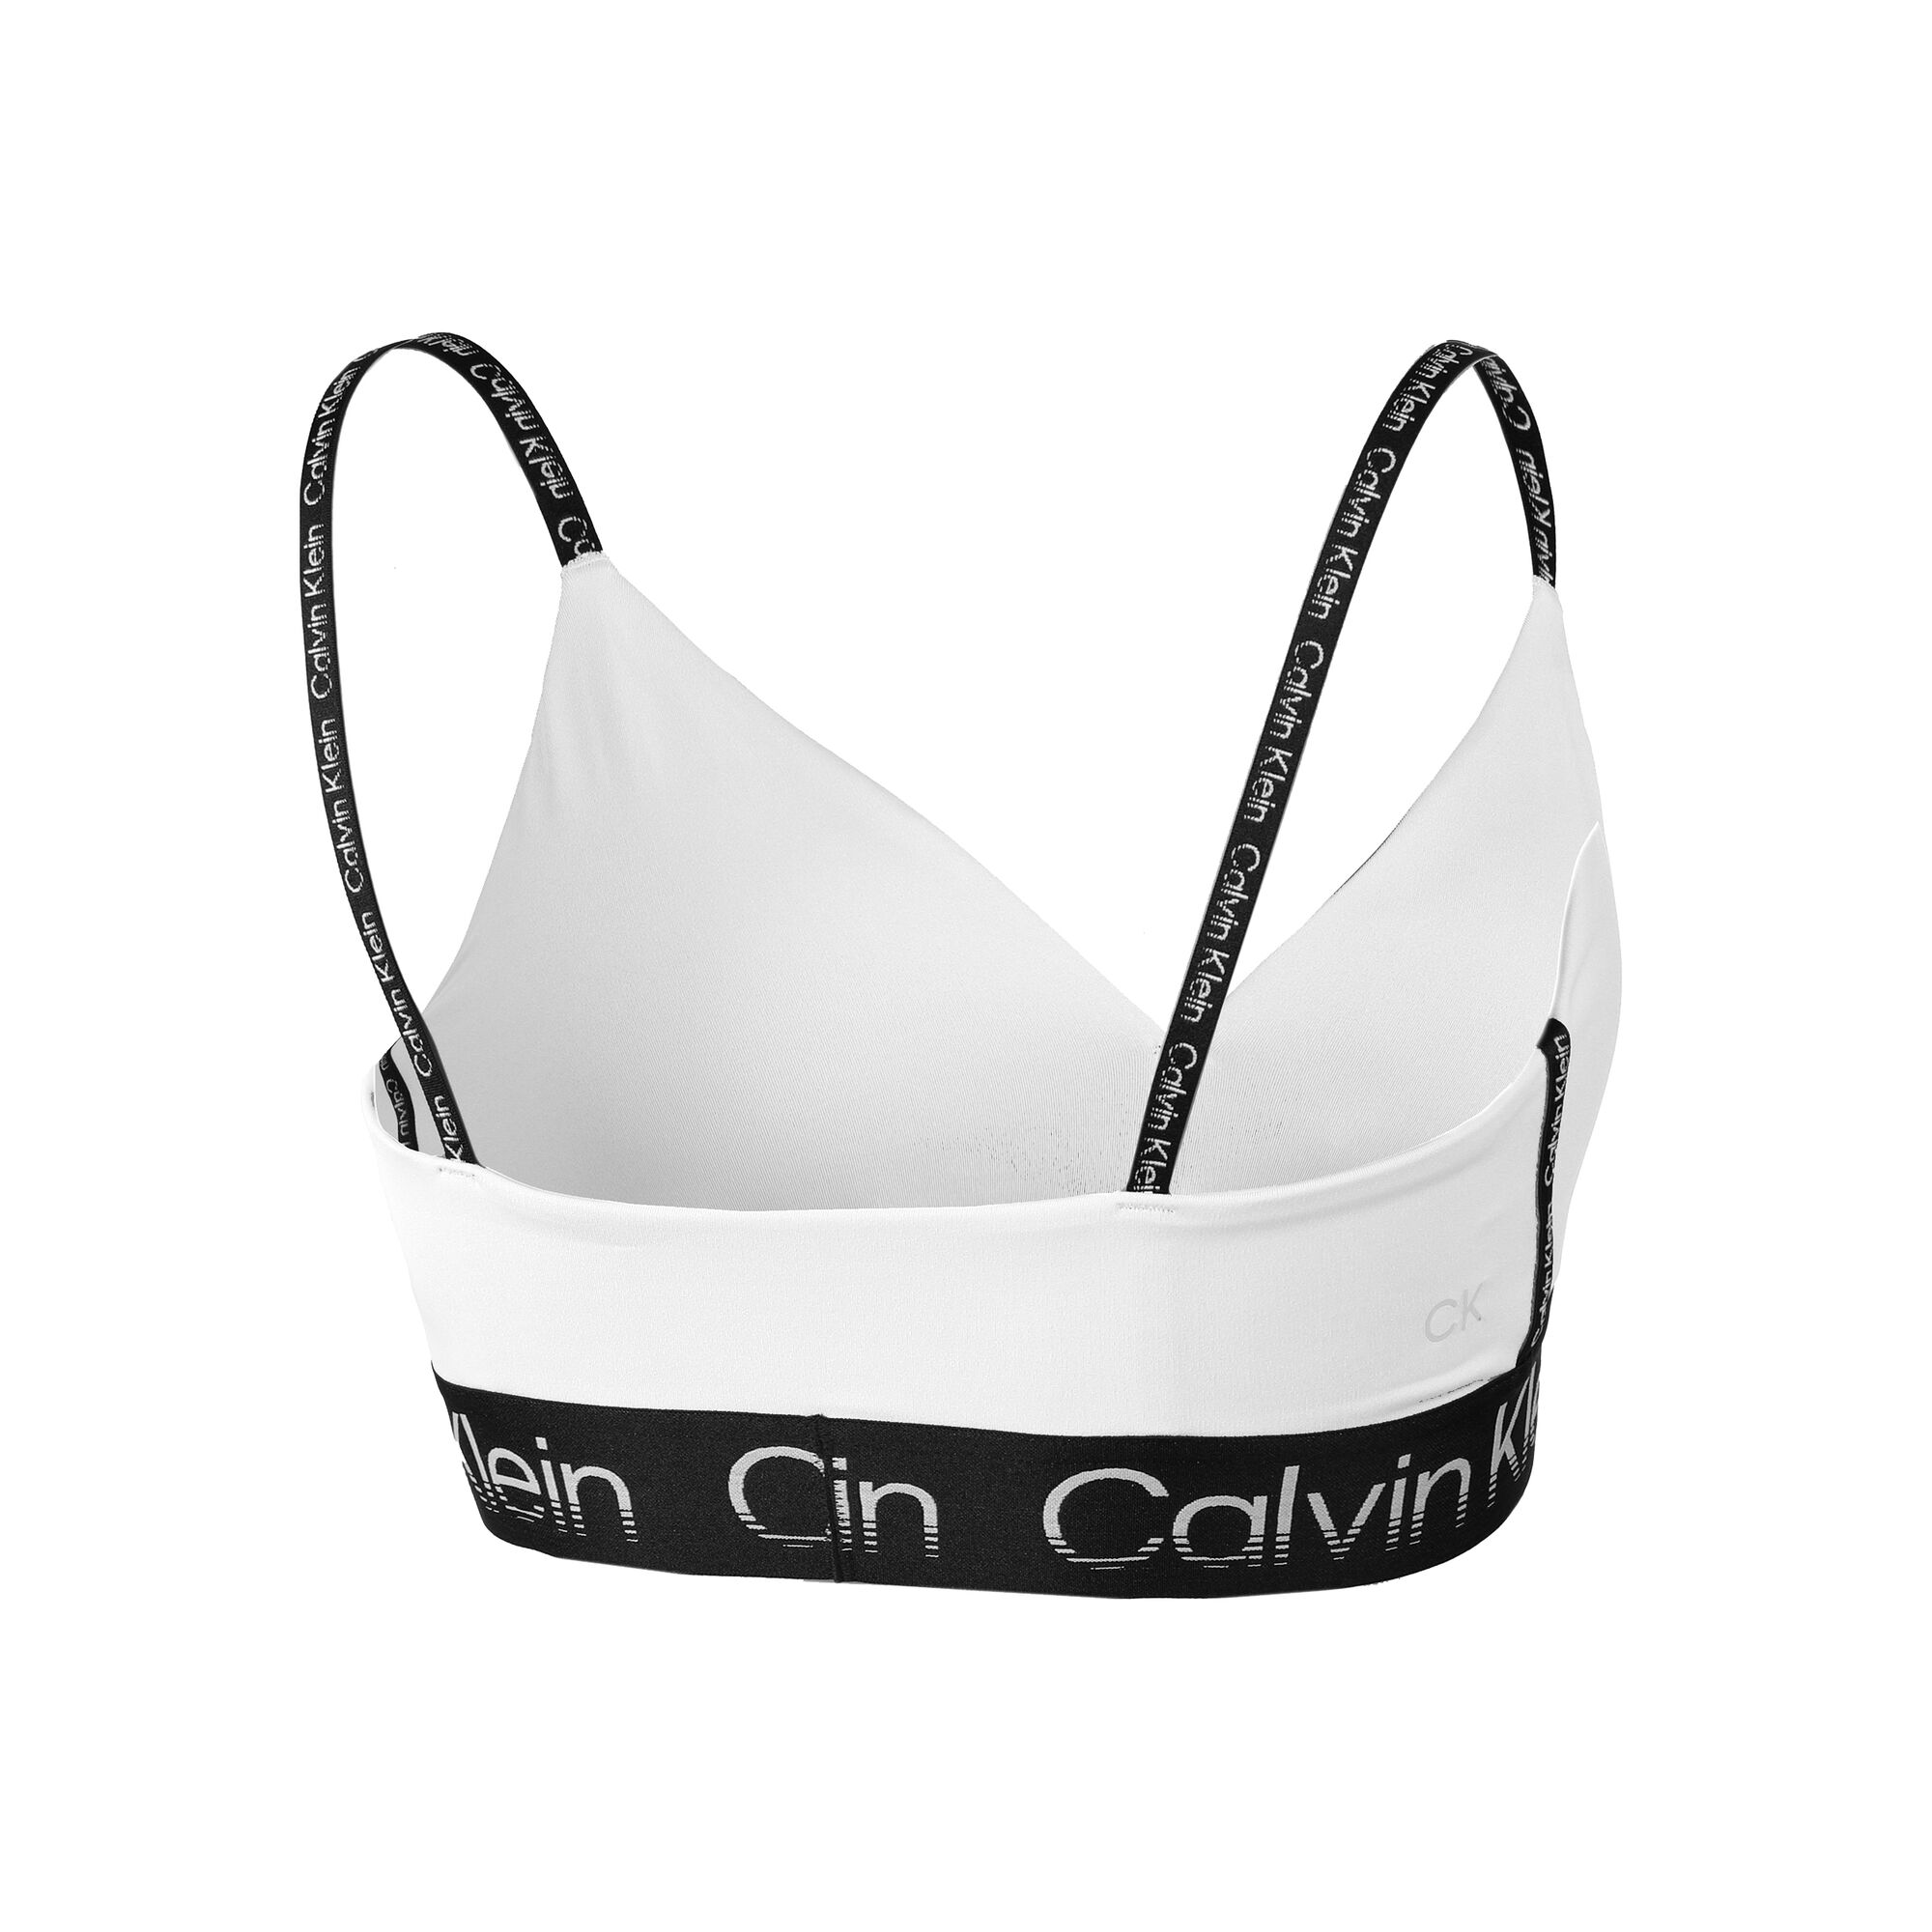 Women's bra Calvin Klein Low Support Sports Bra - black